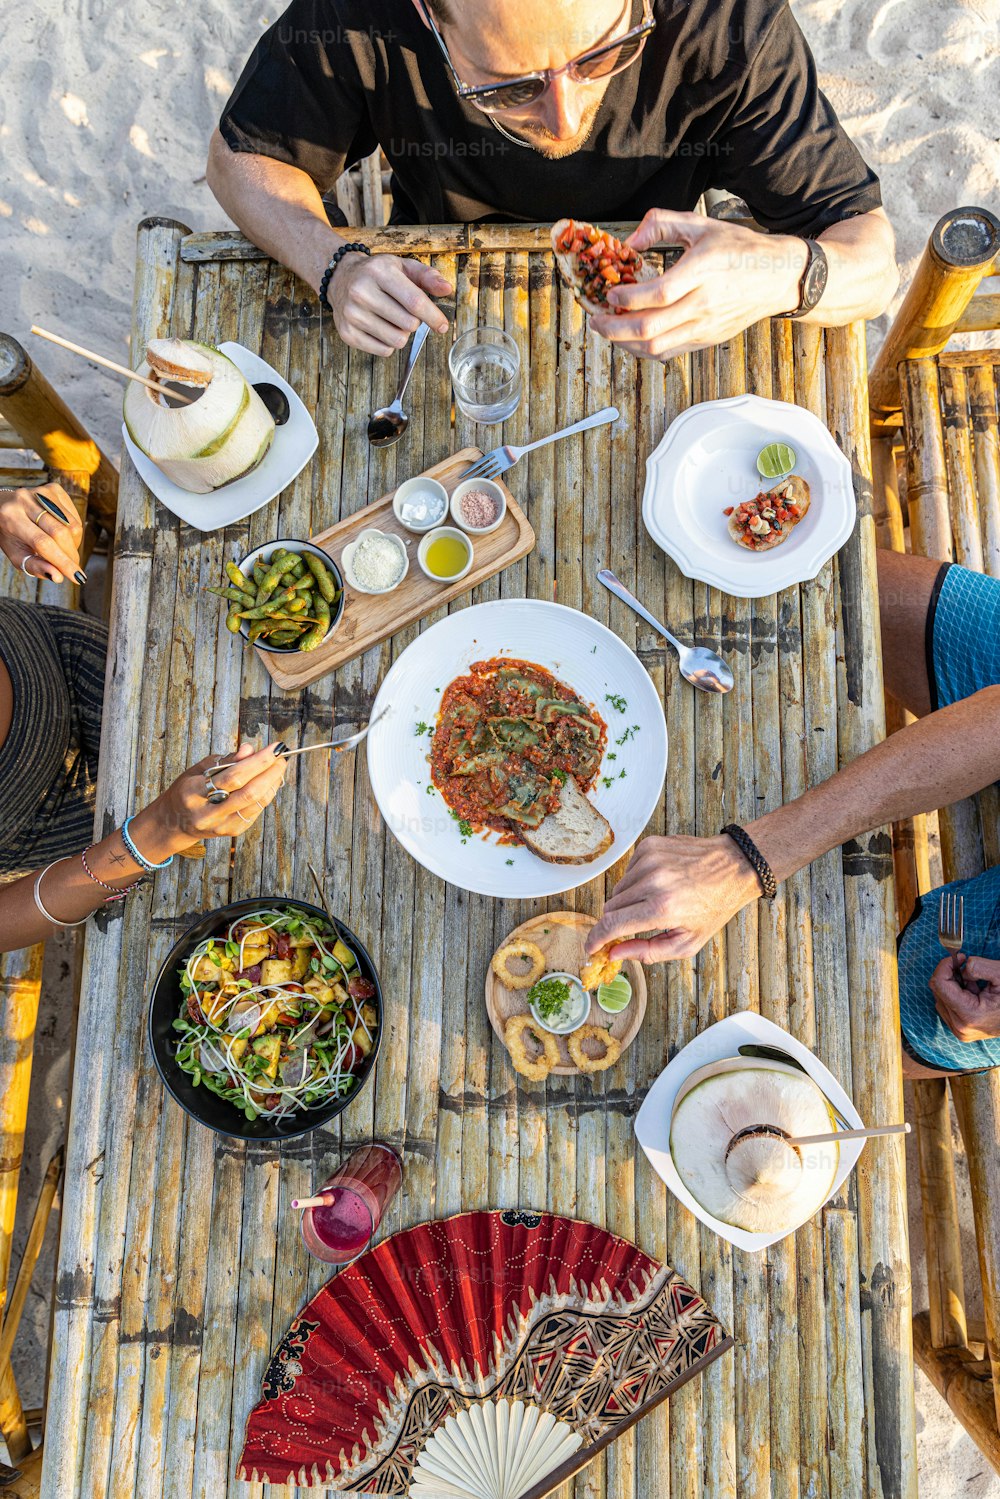 un groupe de personnes assises autour d’une table en train de manger de la nourriture